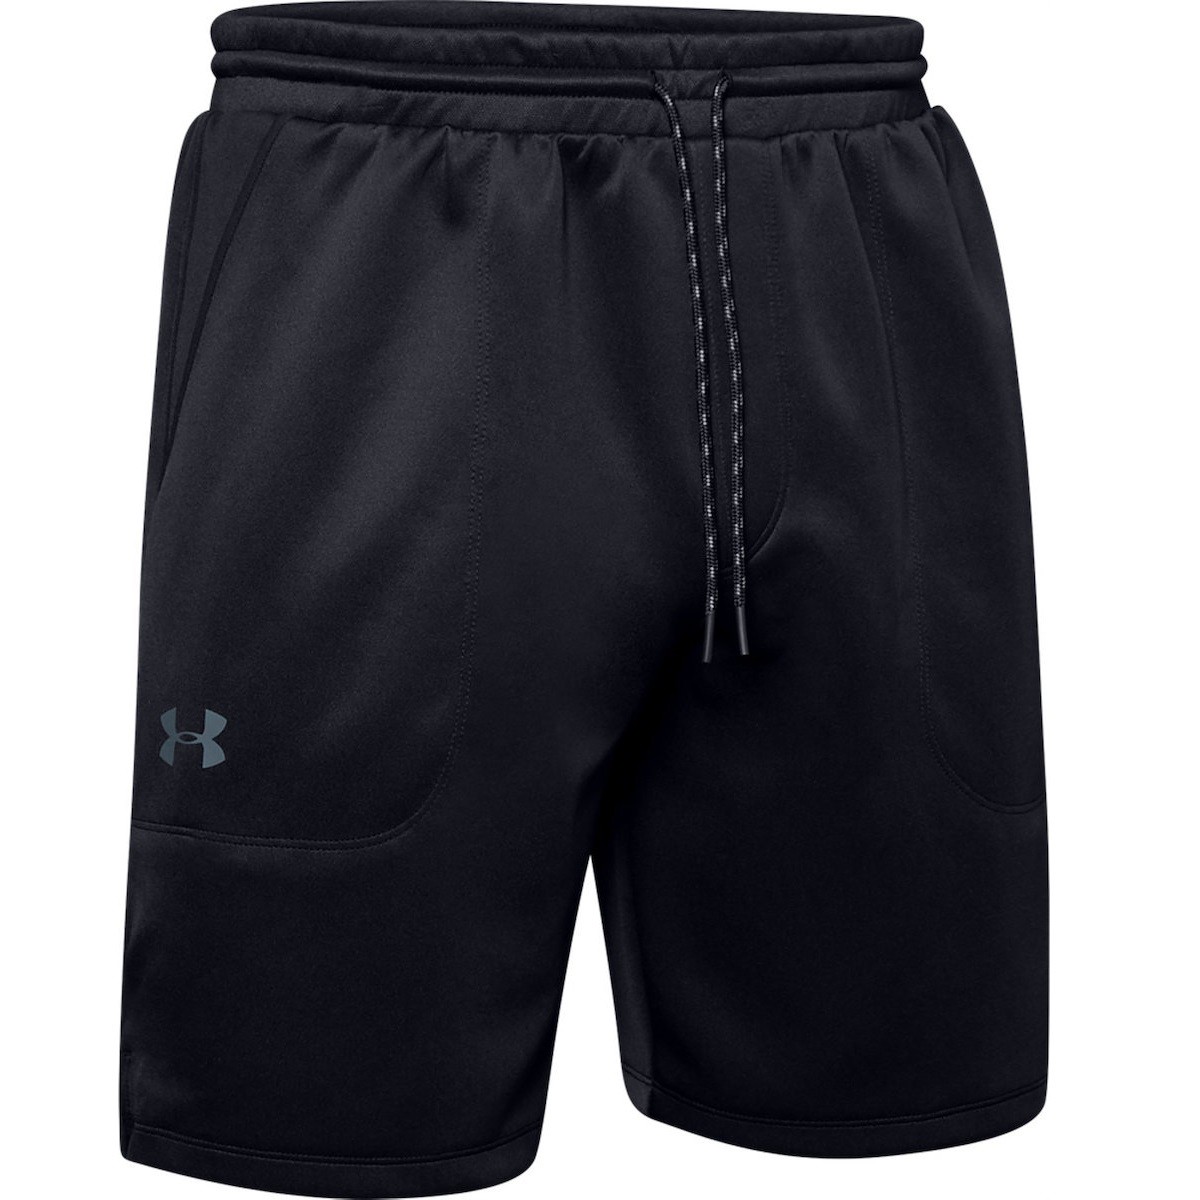 Shorts -  under armour UA MK-1 Warm-Up Shorts 5274